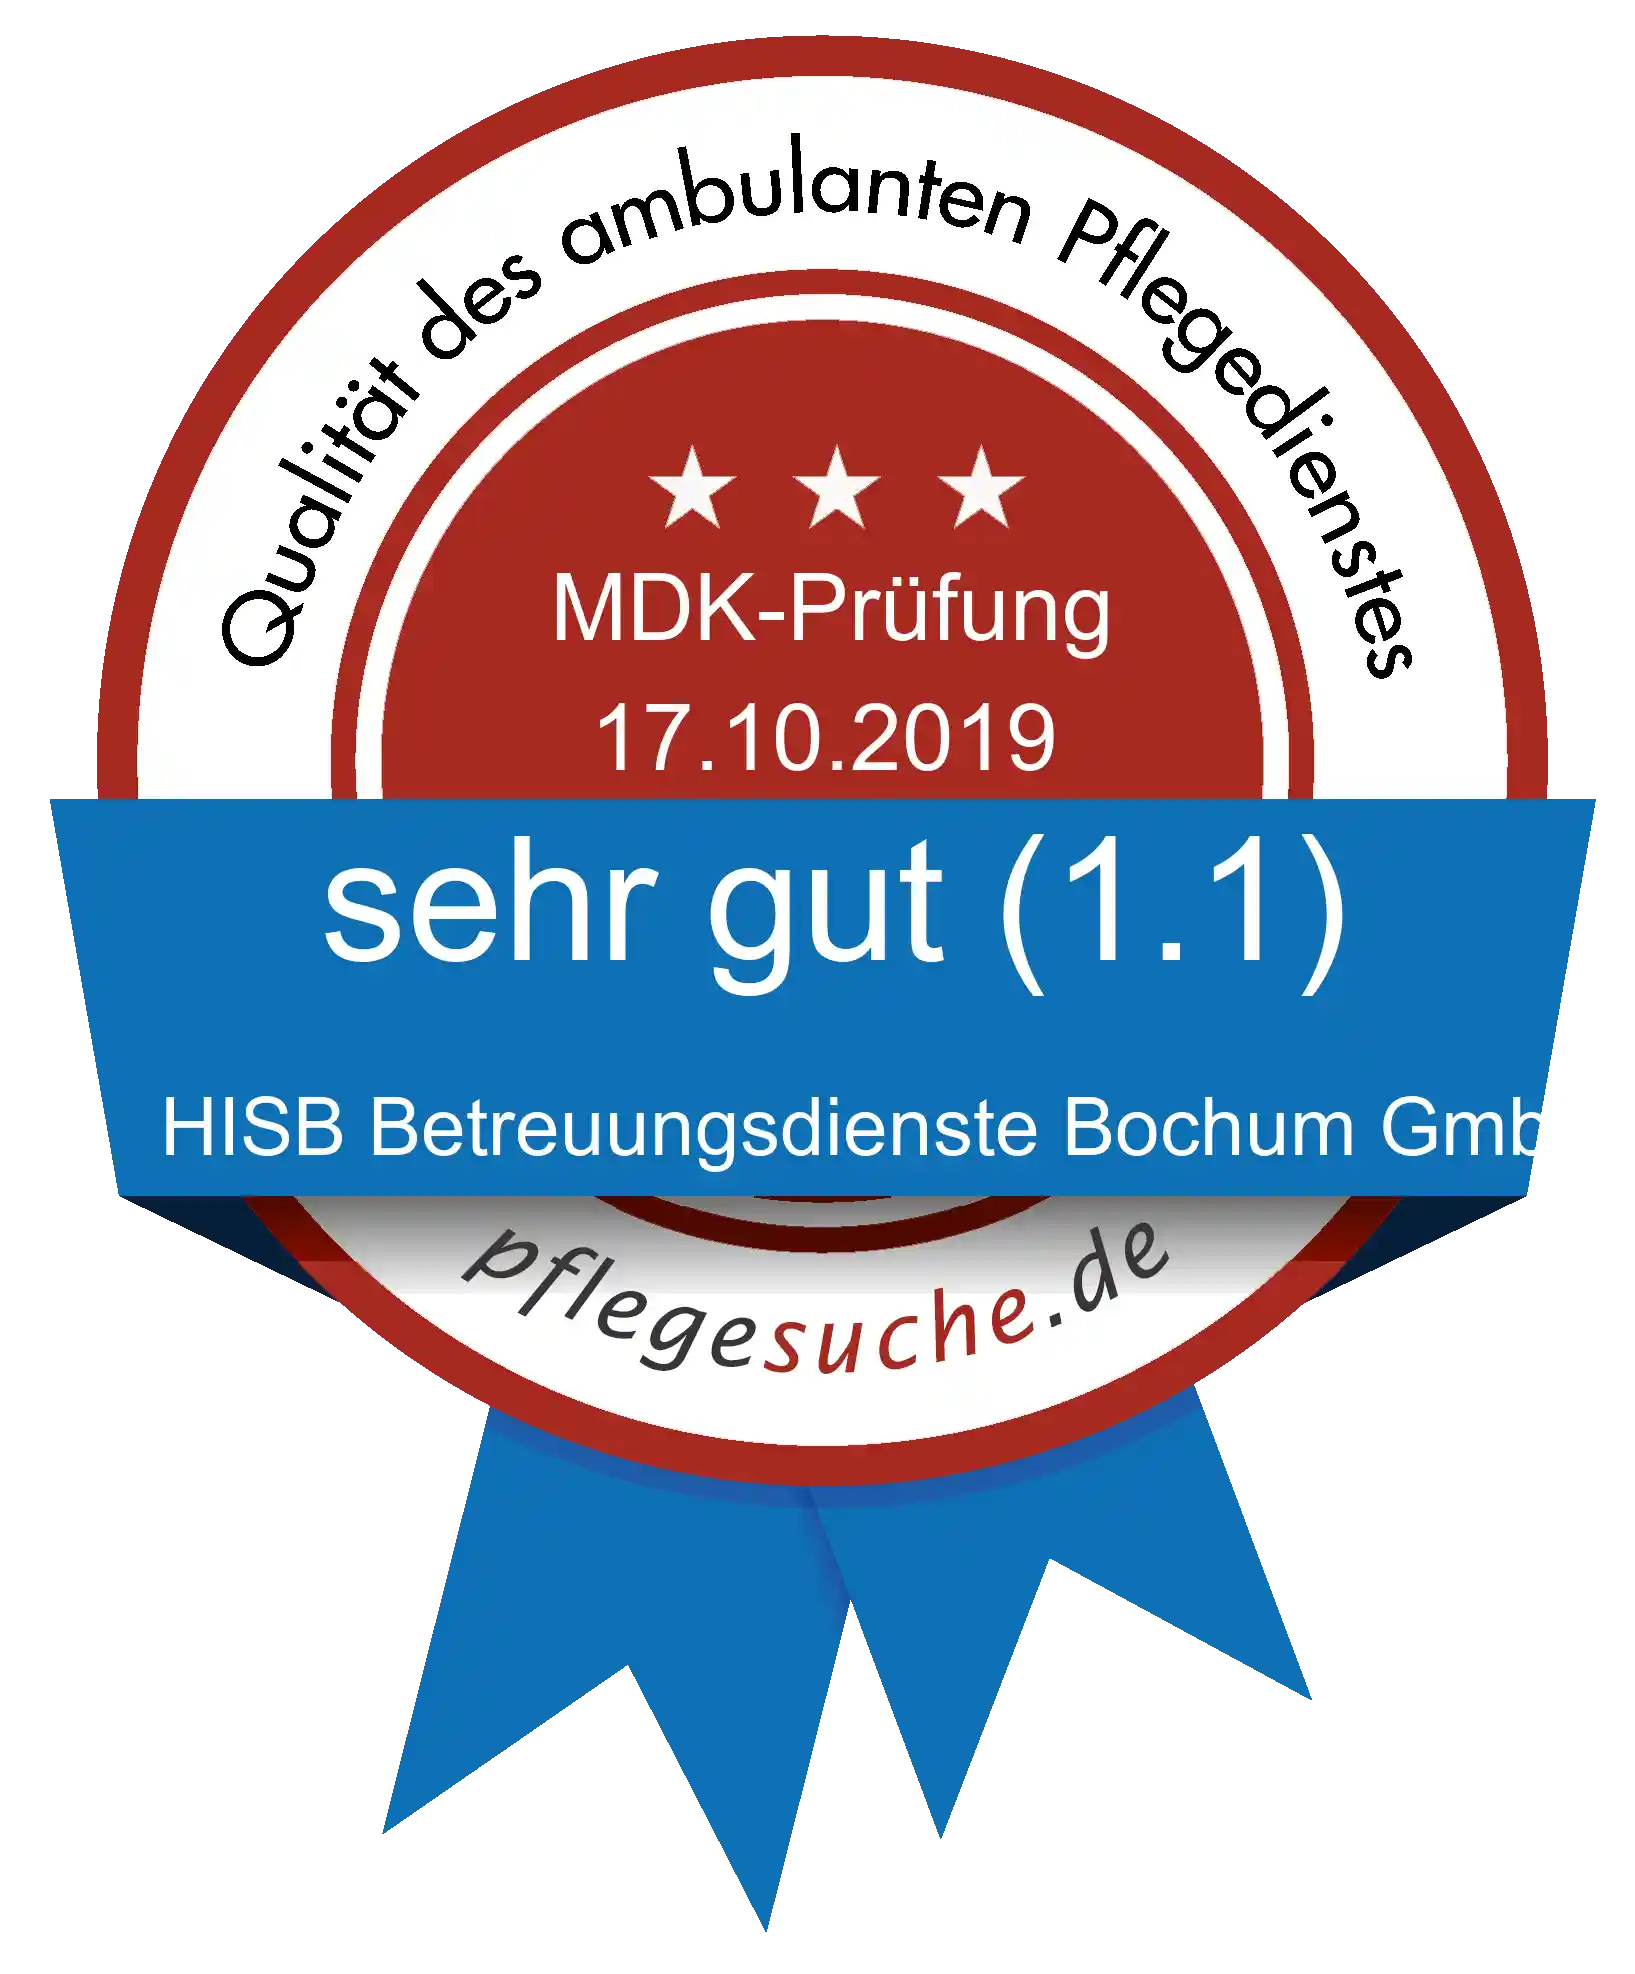 Siegel Benotung: HISB Betreuungsdienste Bochum GmbH